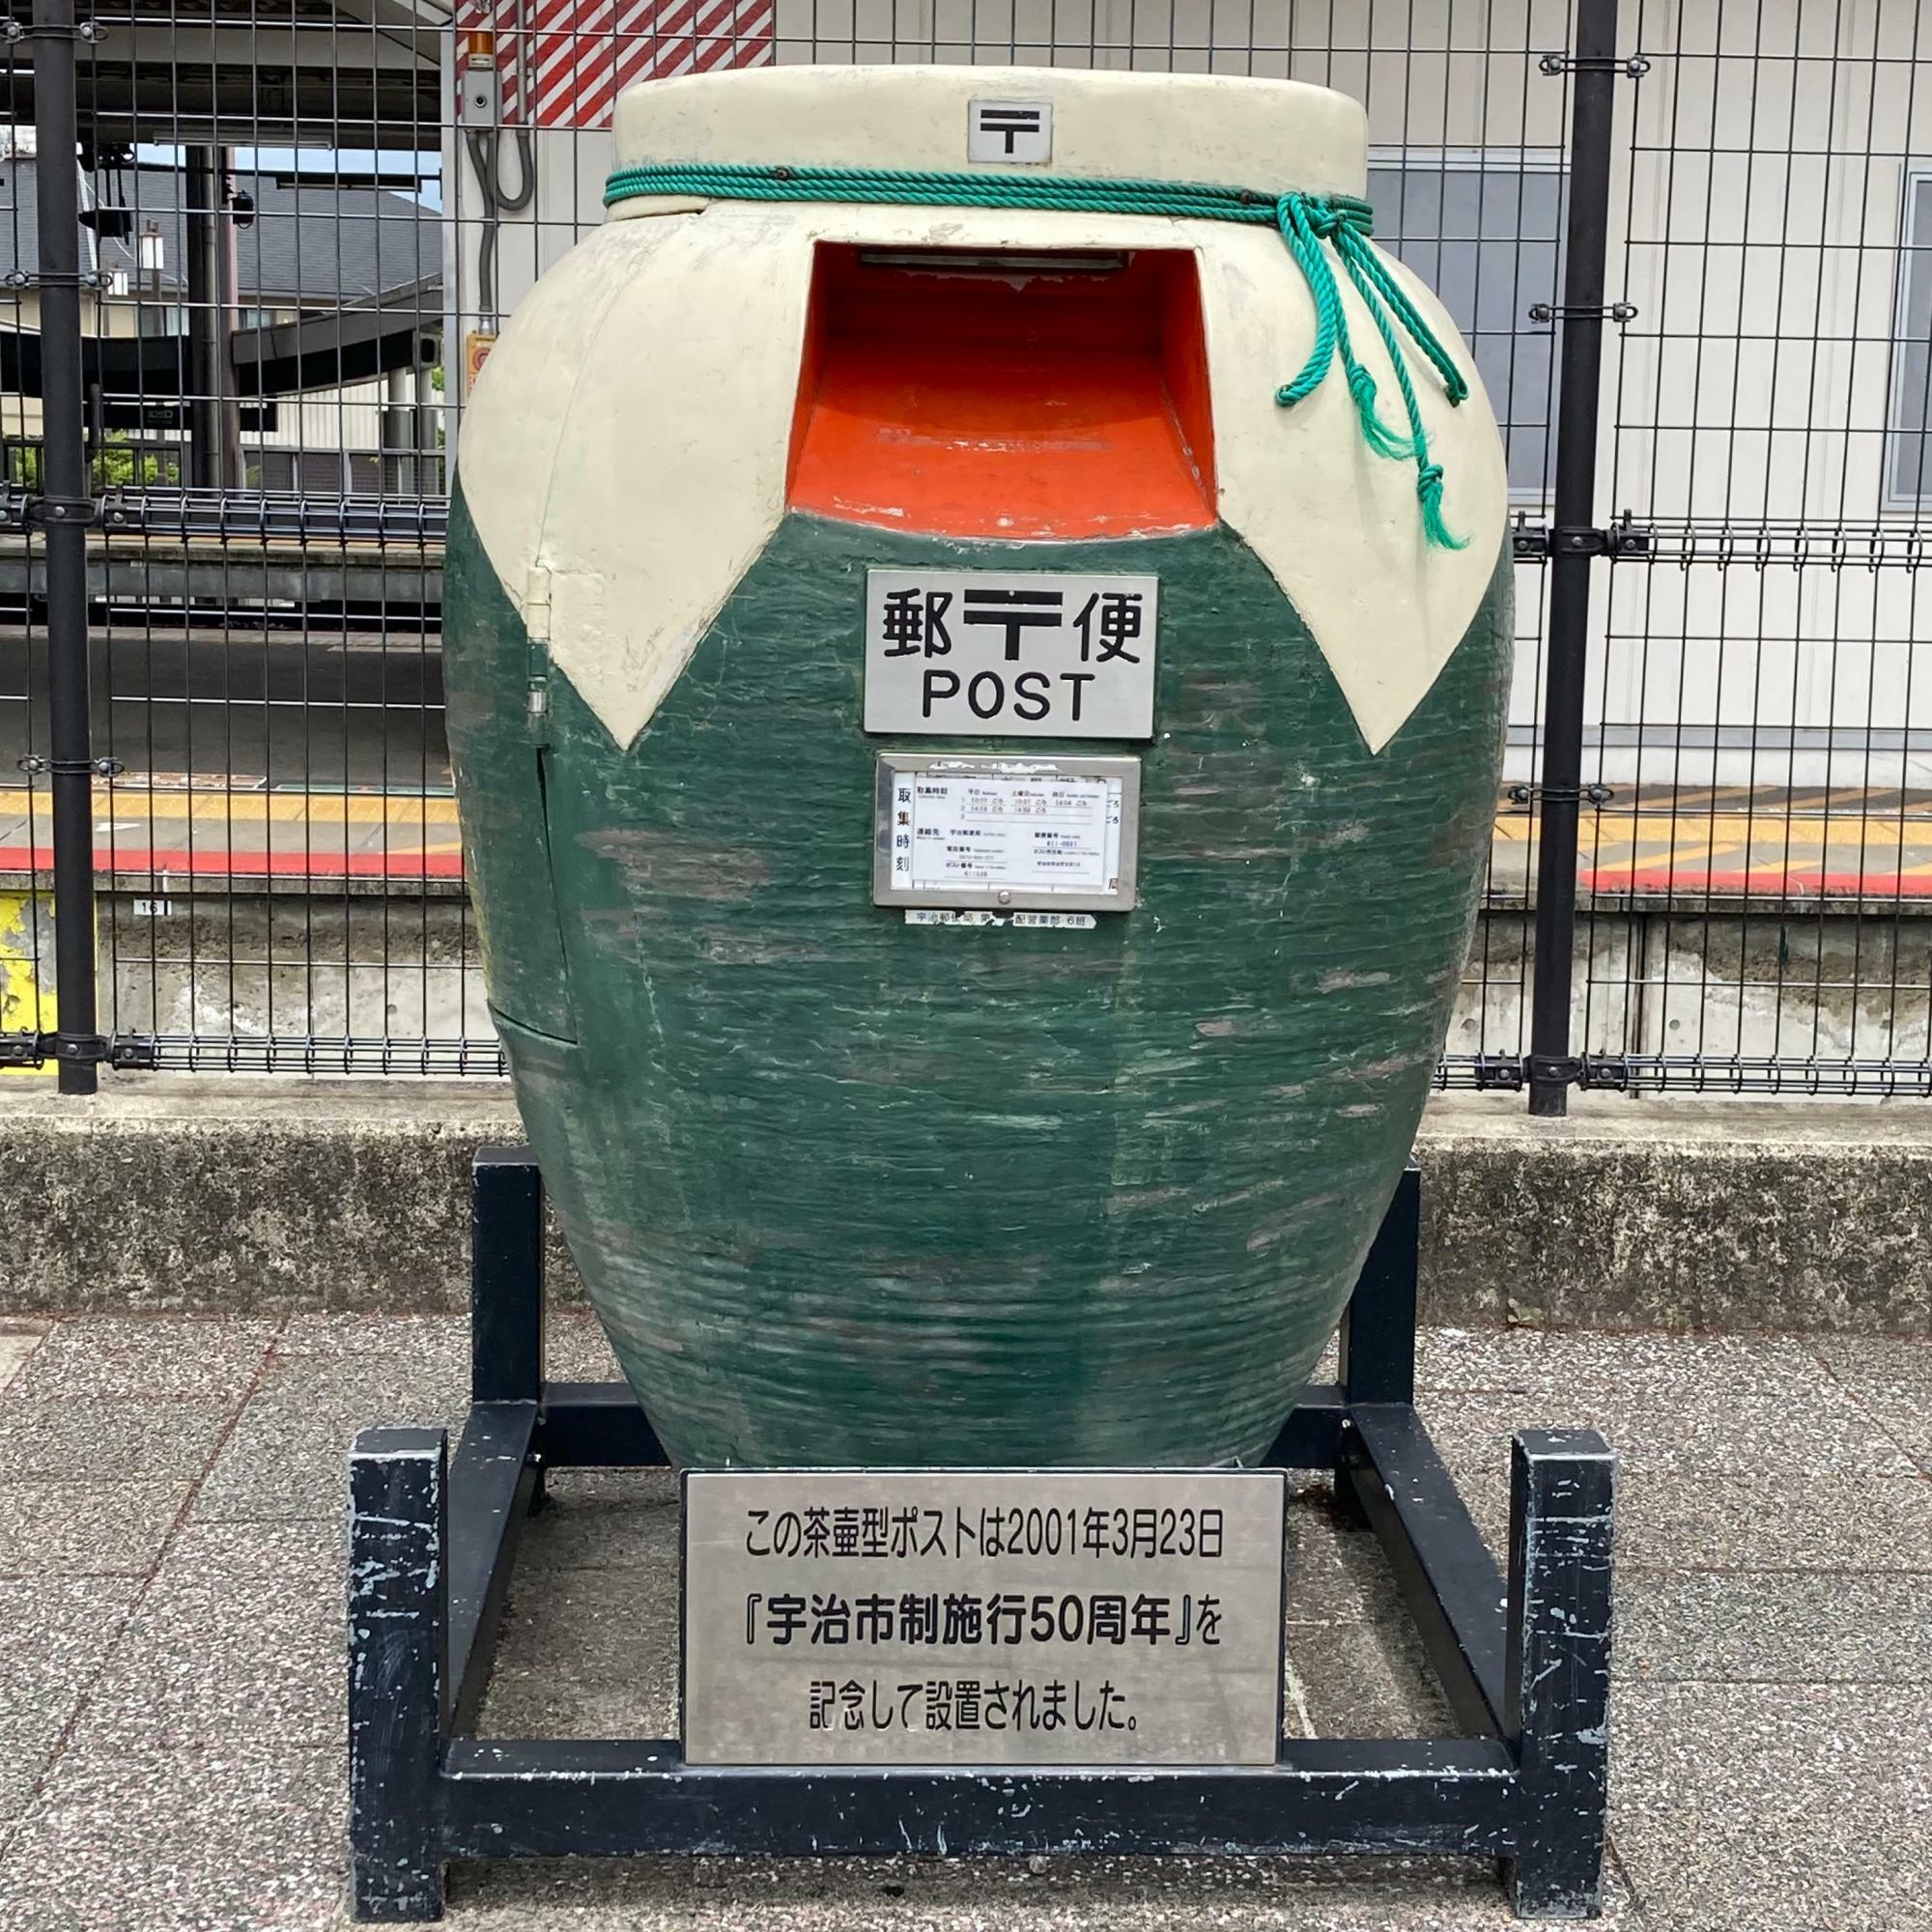 茶壷の形をしたポストはJR宇治駅の前だけ！